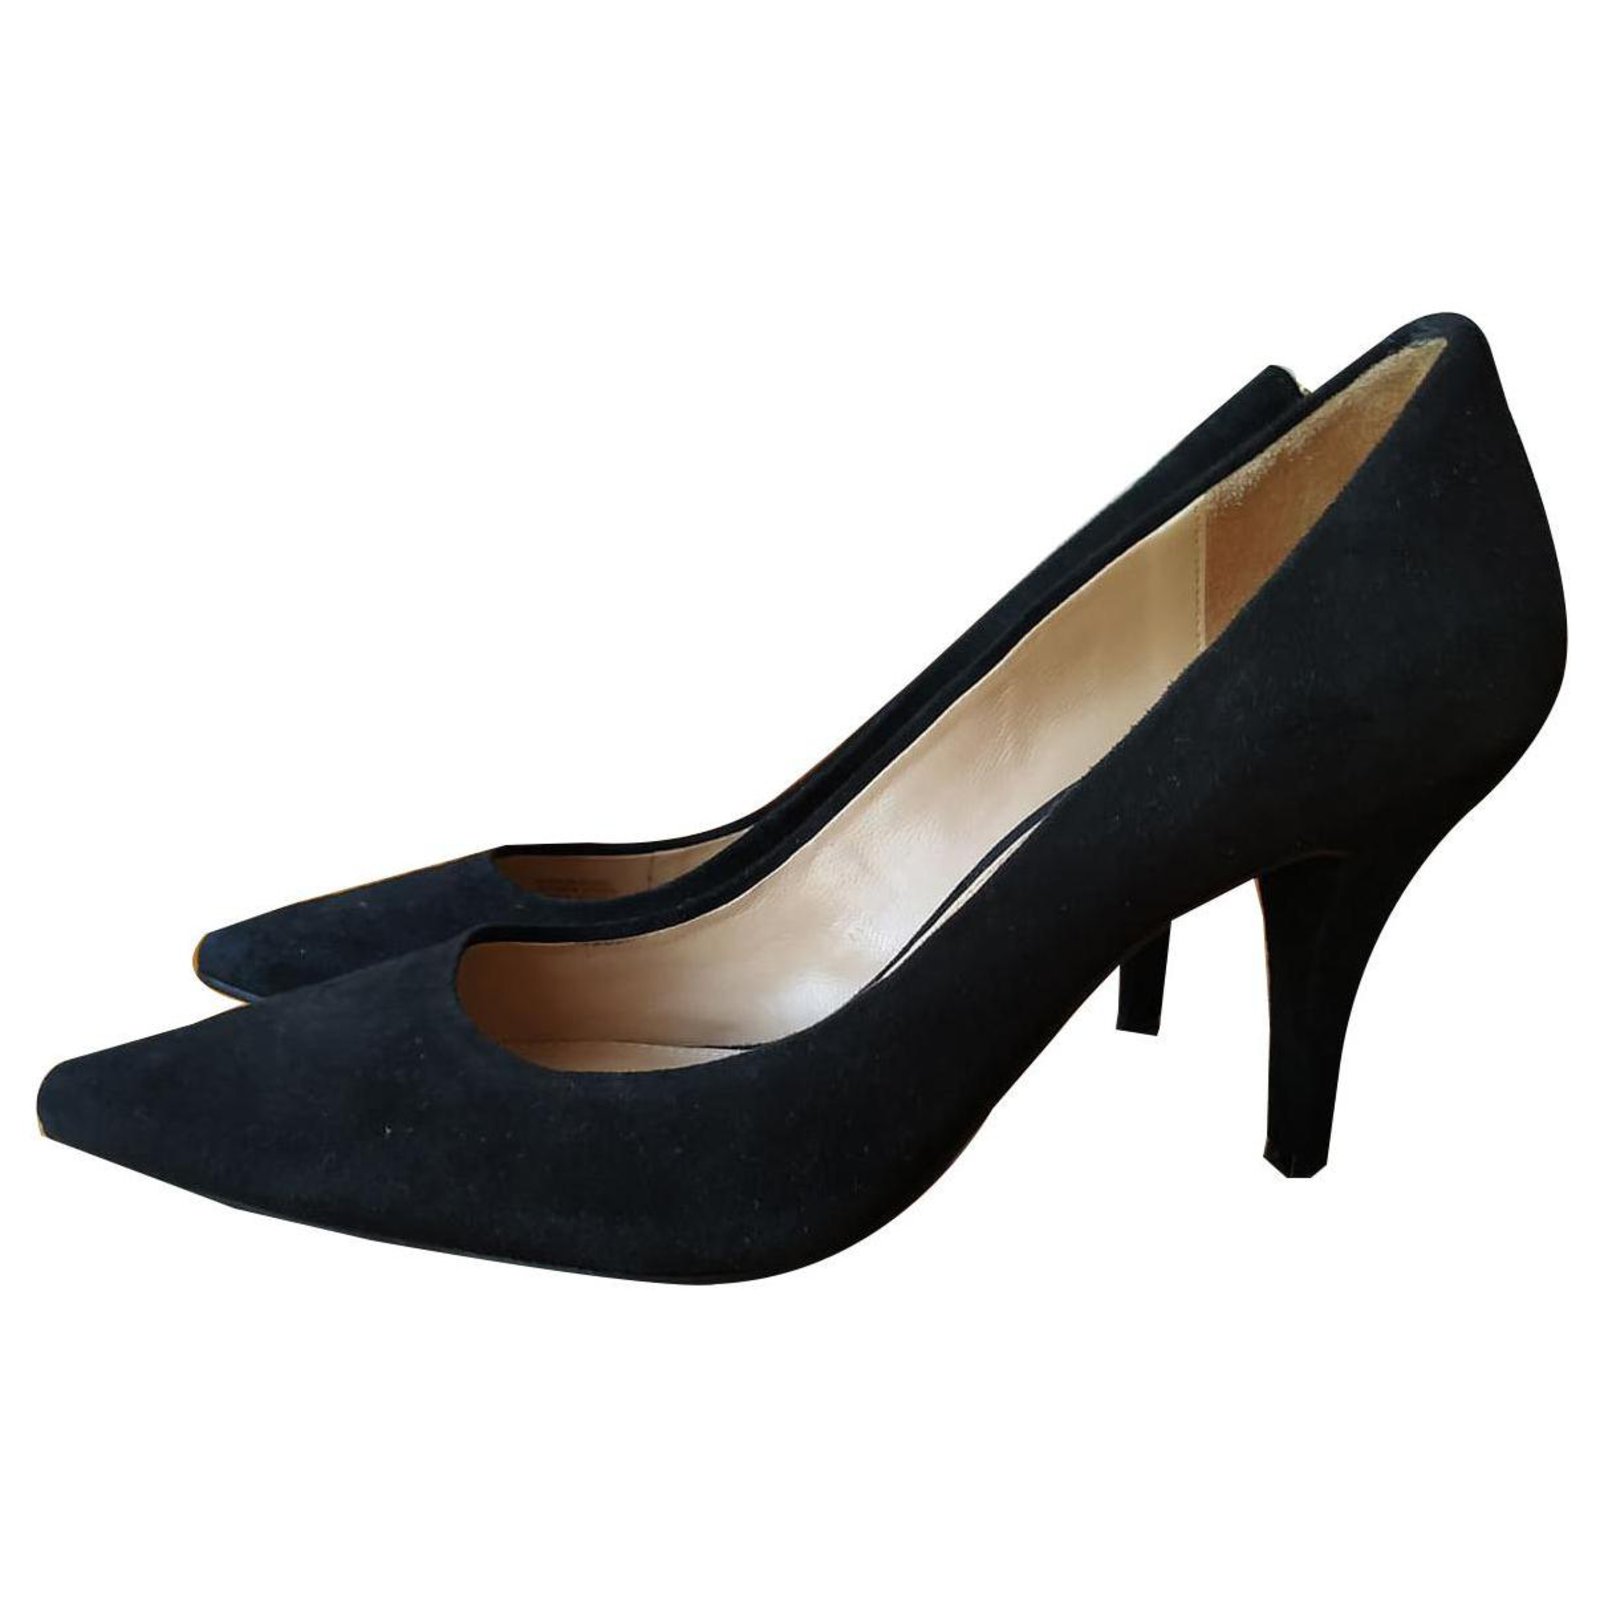 black pumps 3.5 inch heel